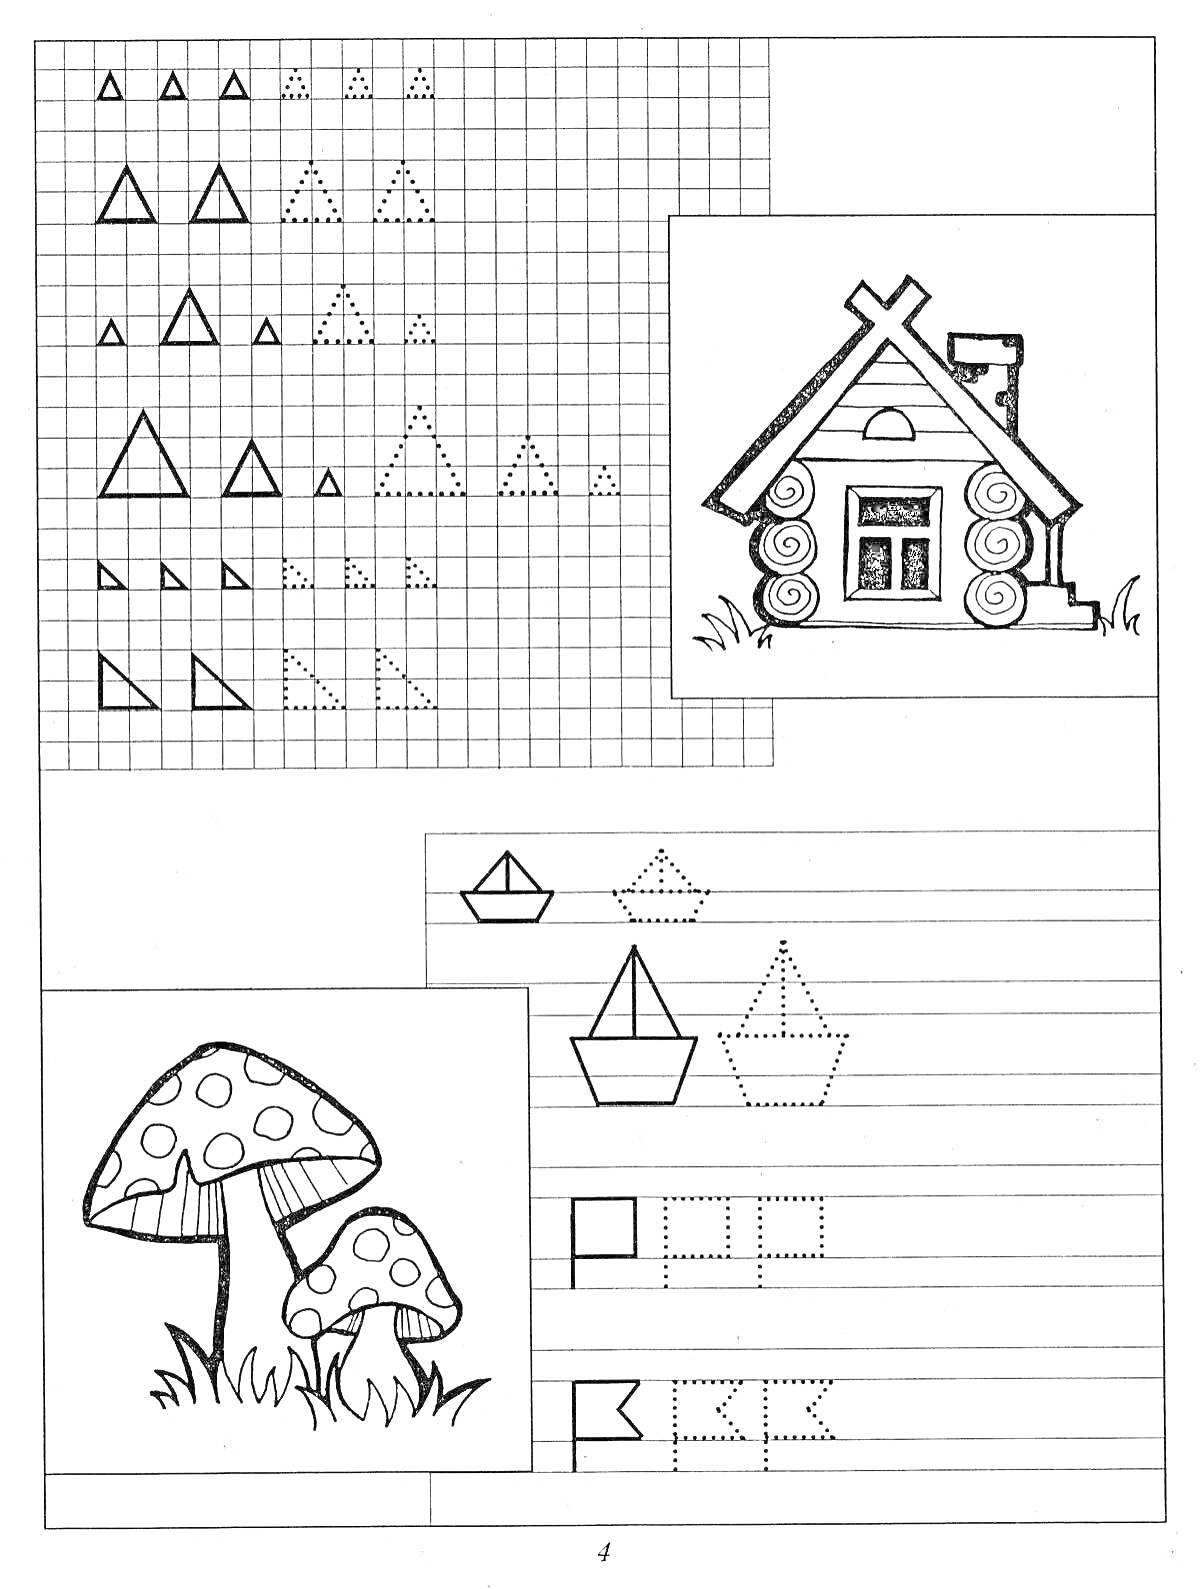 Раскраска Геометрические фигуры, домик, грибы, кораблики, буквы на школьной раскраске